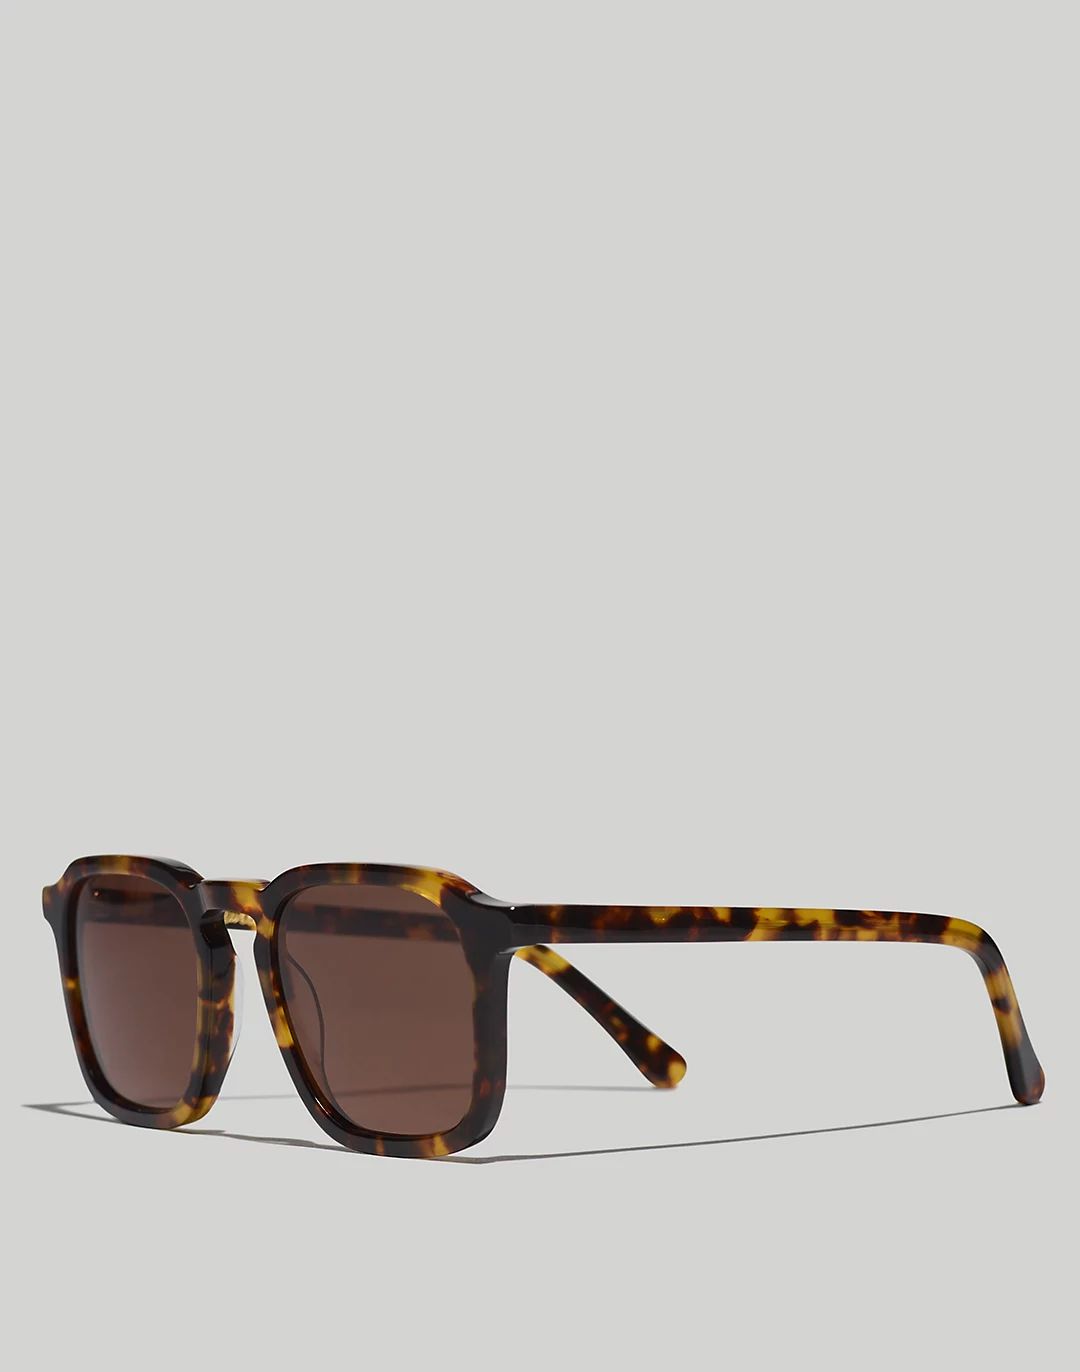 Ralston Sunglasses | Madewell